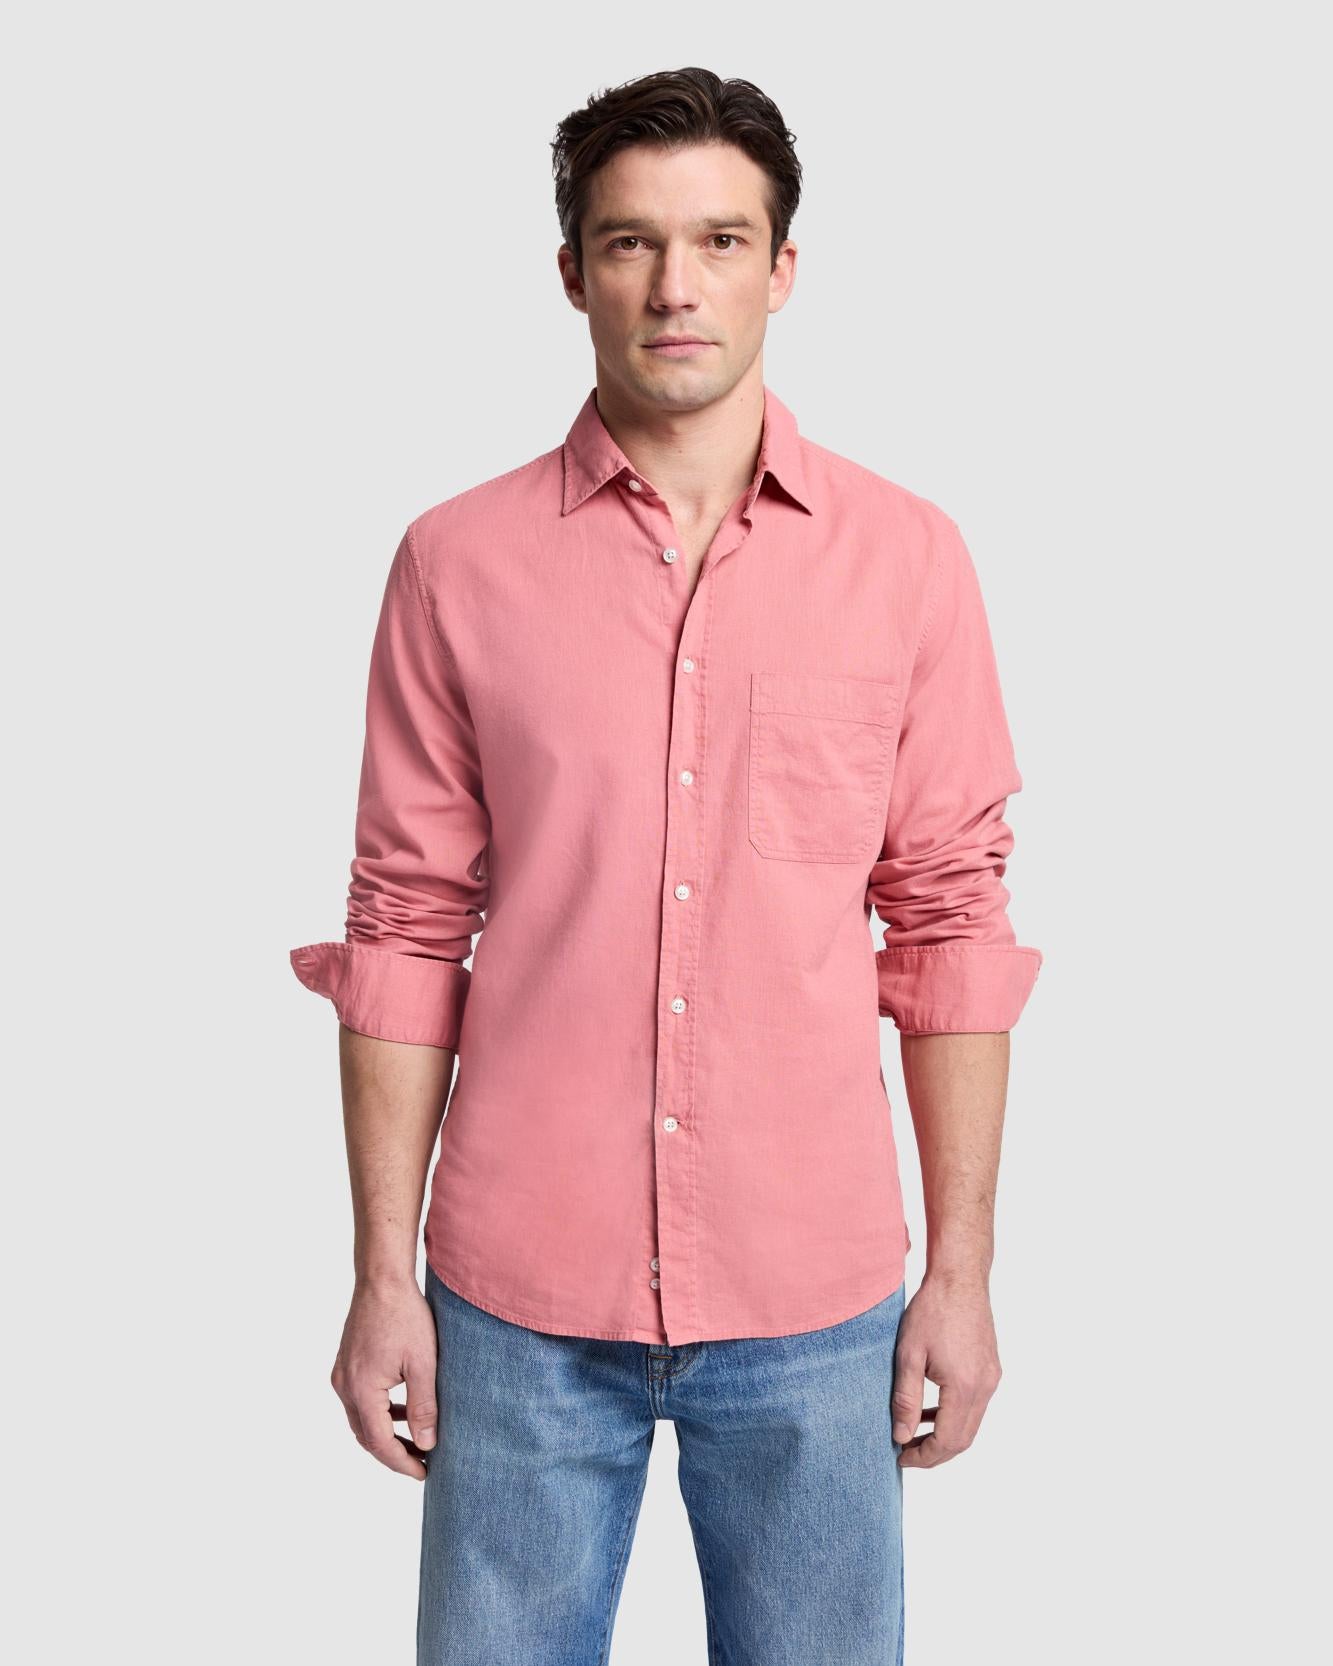 Linen Blend Button Up Shirt in Dusty Rose